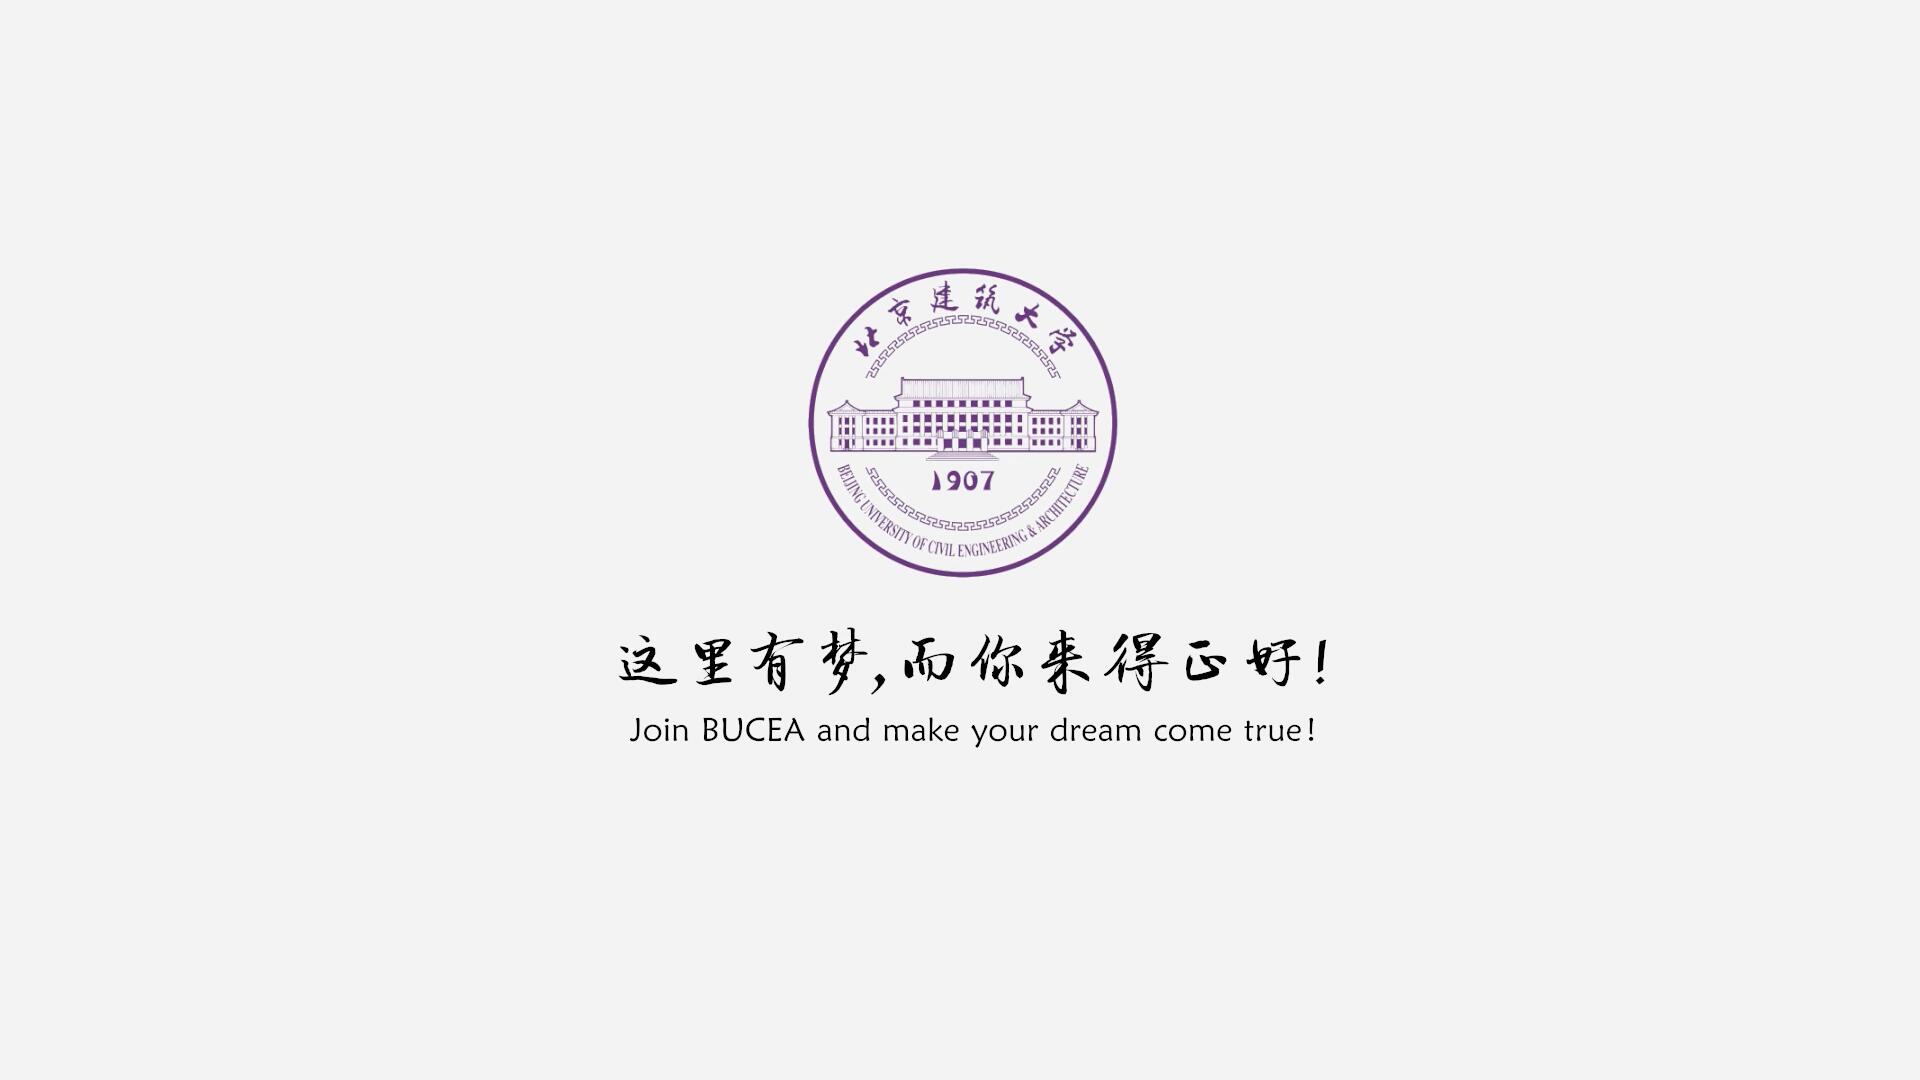 北京建筑大学2019年招生宣传片